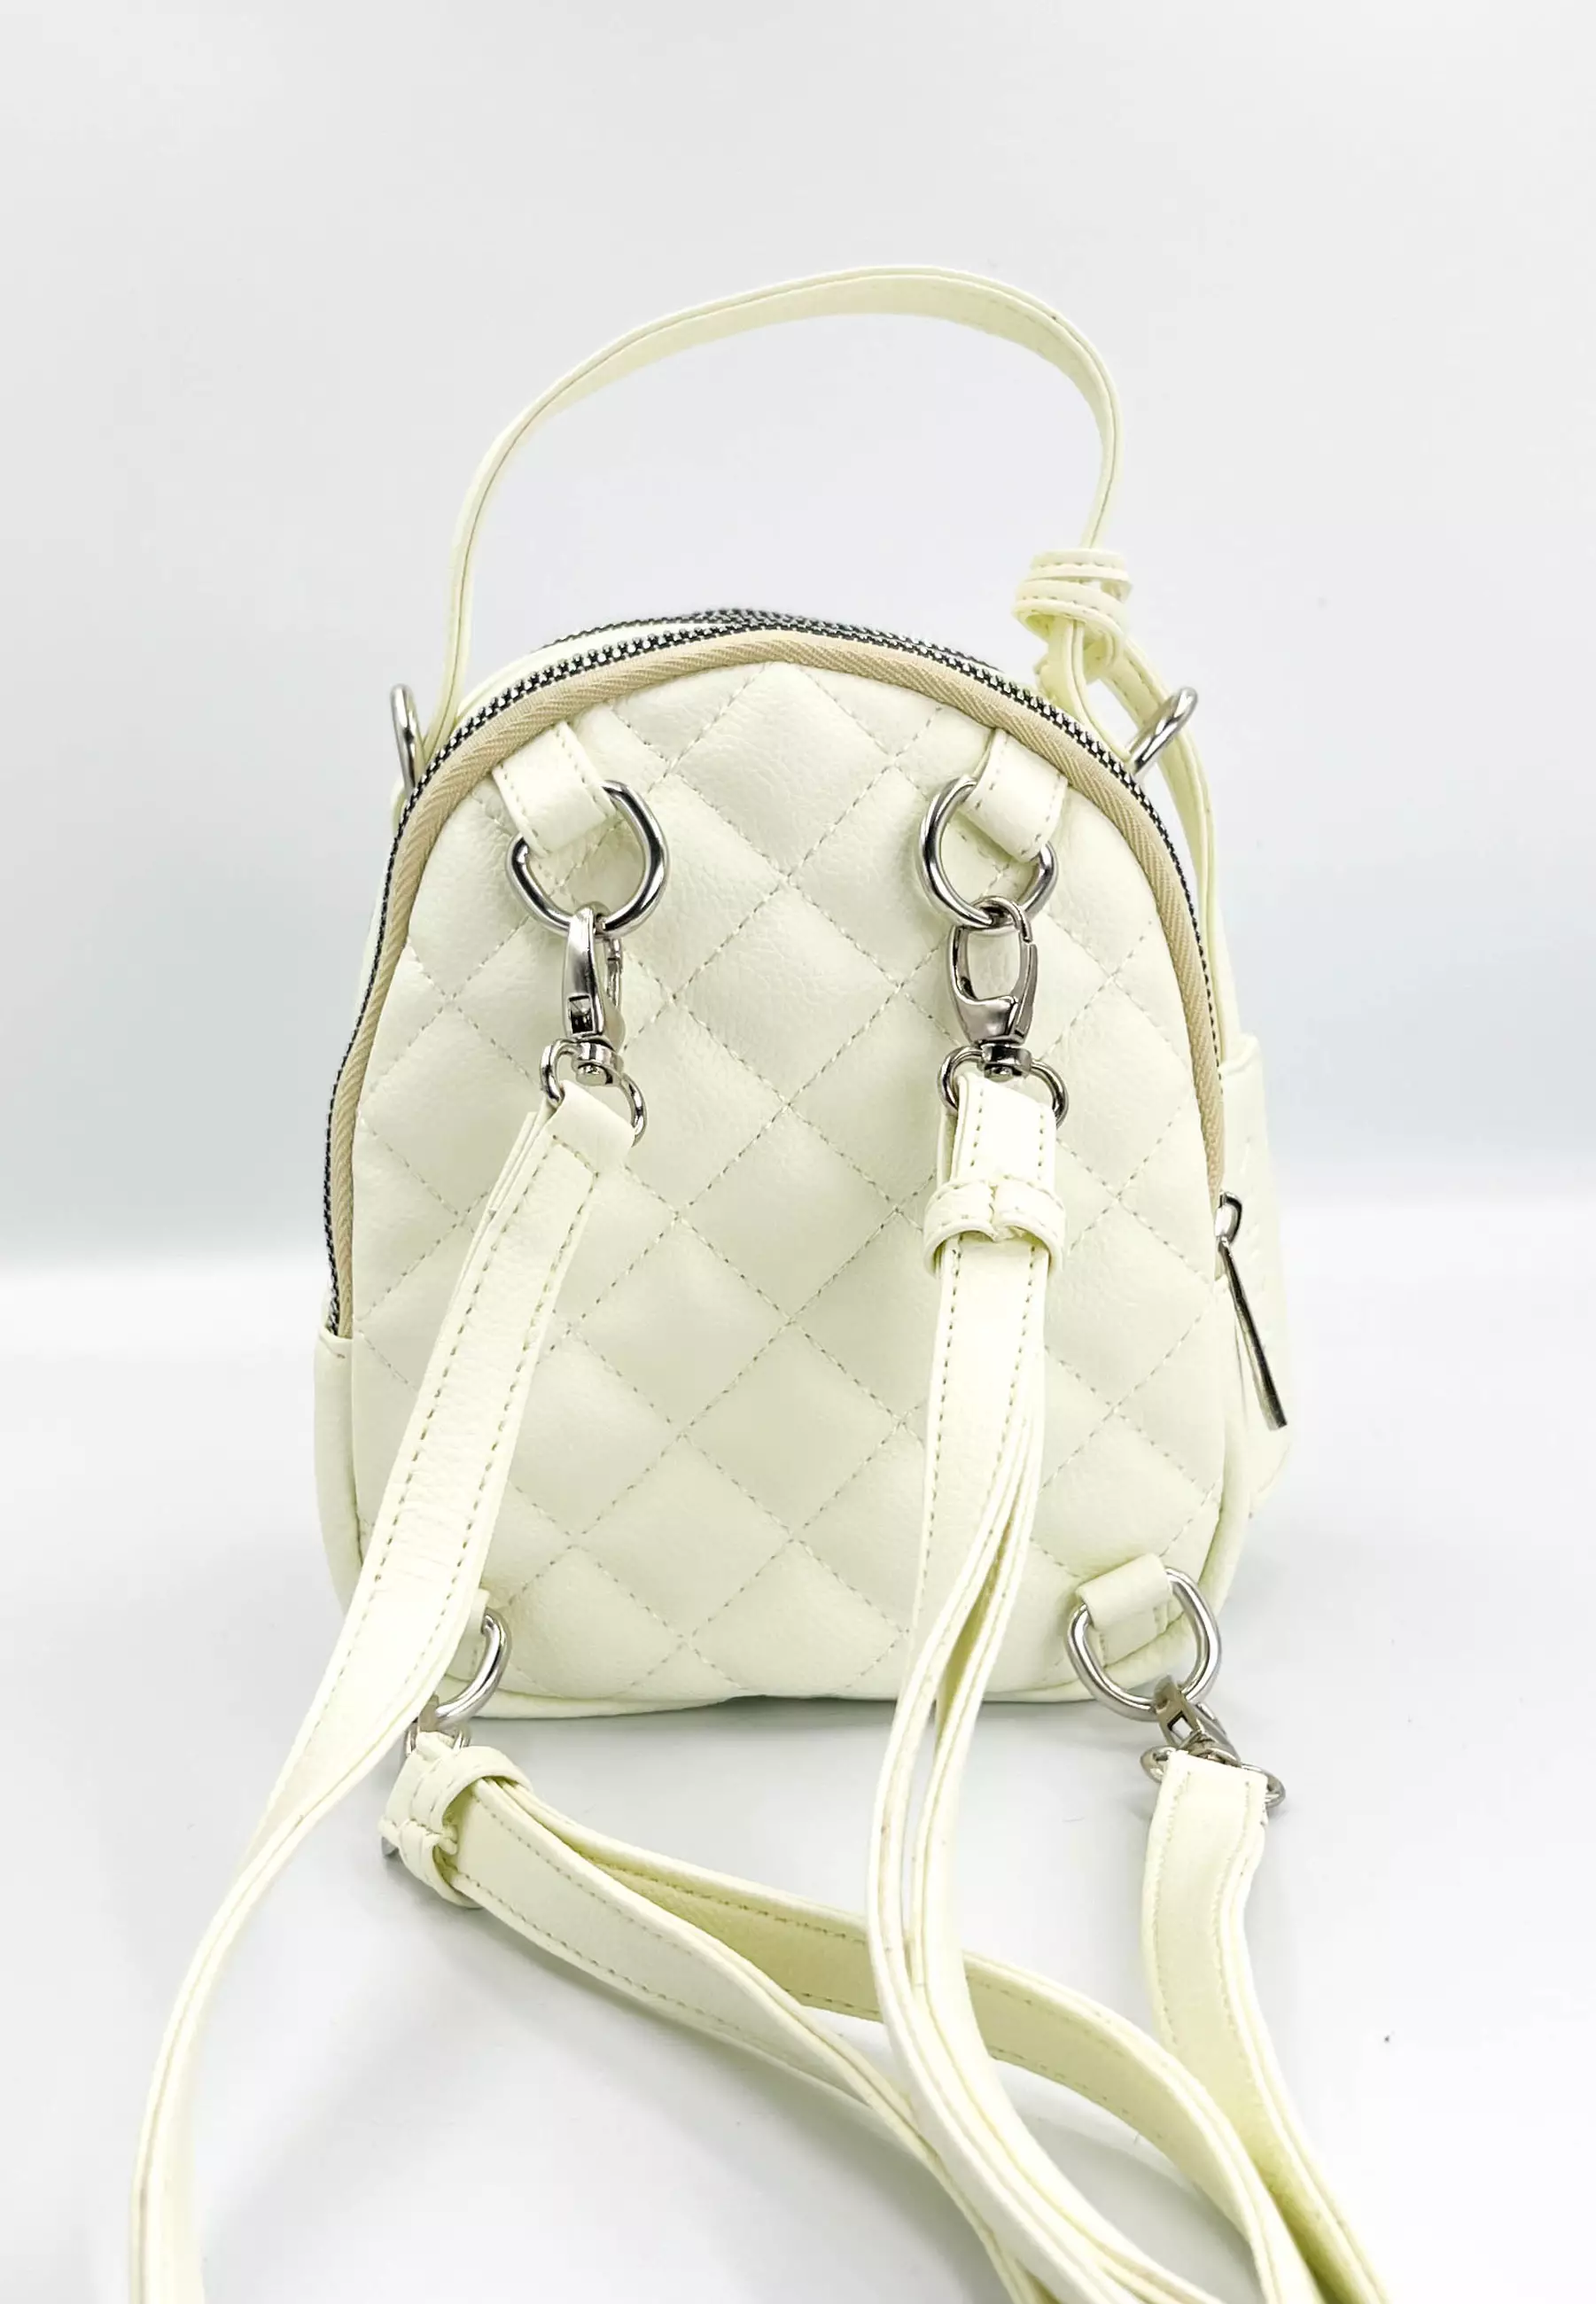 Chanel tas dengan kualitas terbaik - Lifestyle